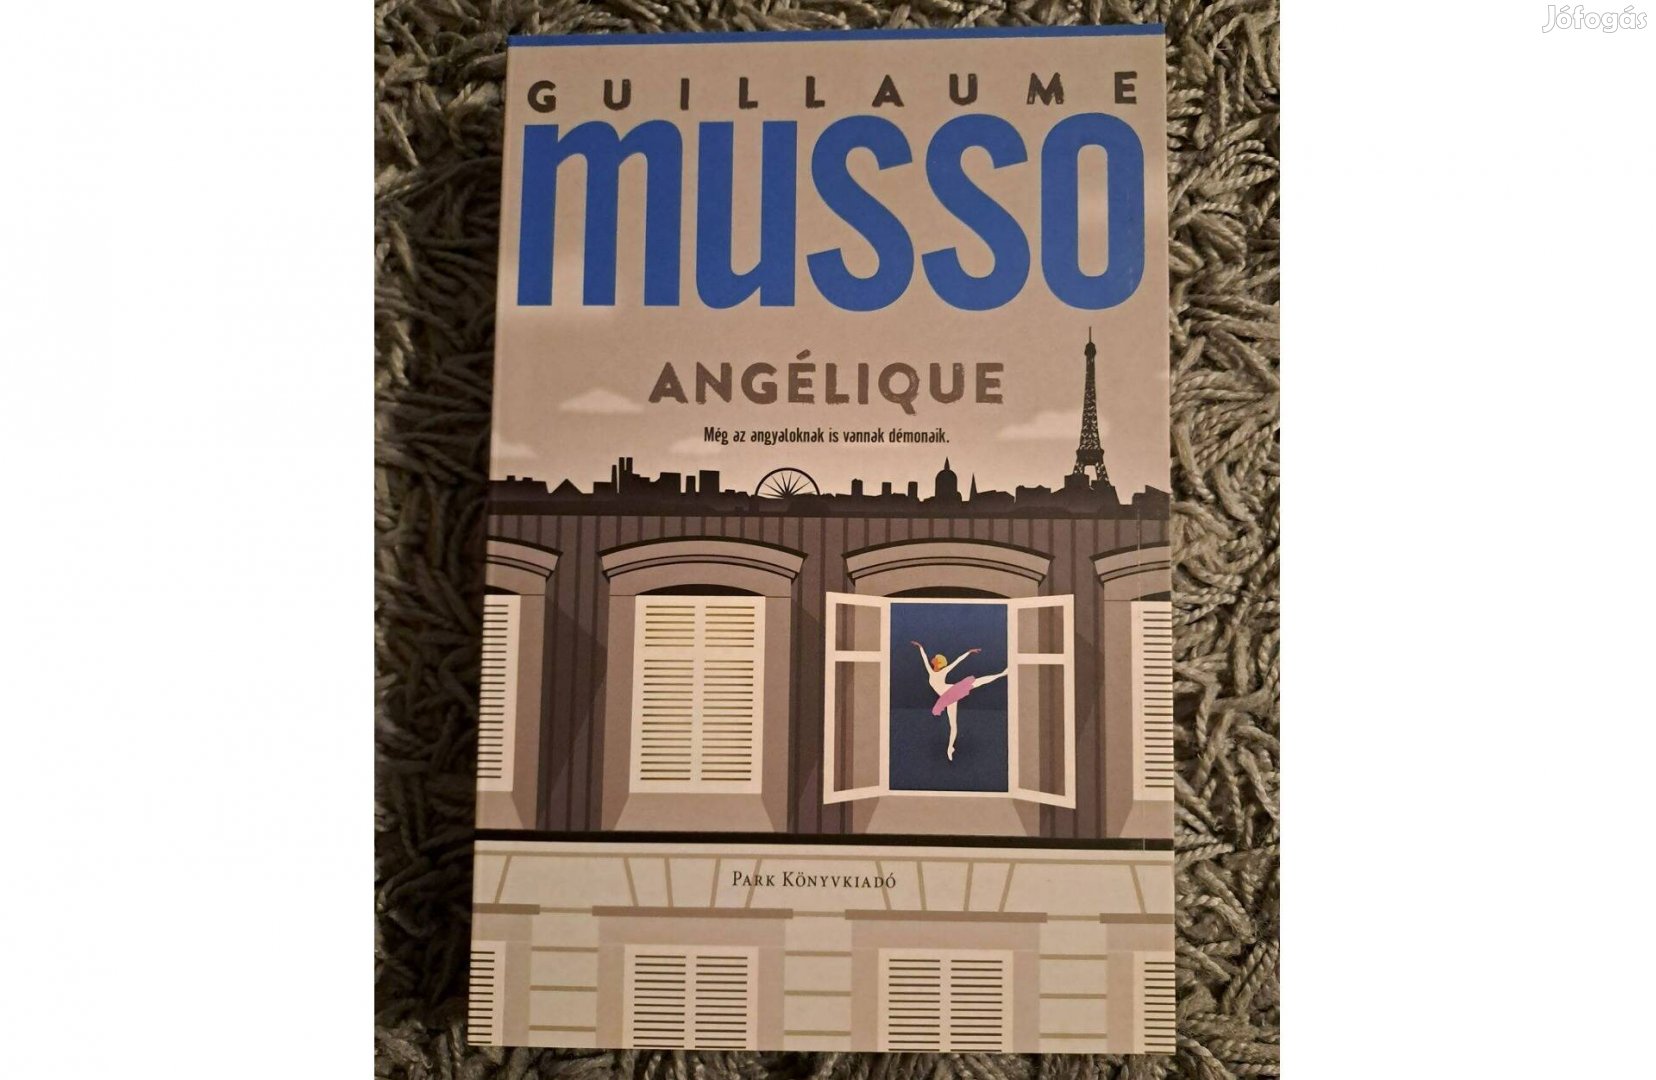 Angélique  Guillaume Musso